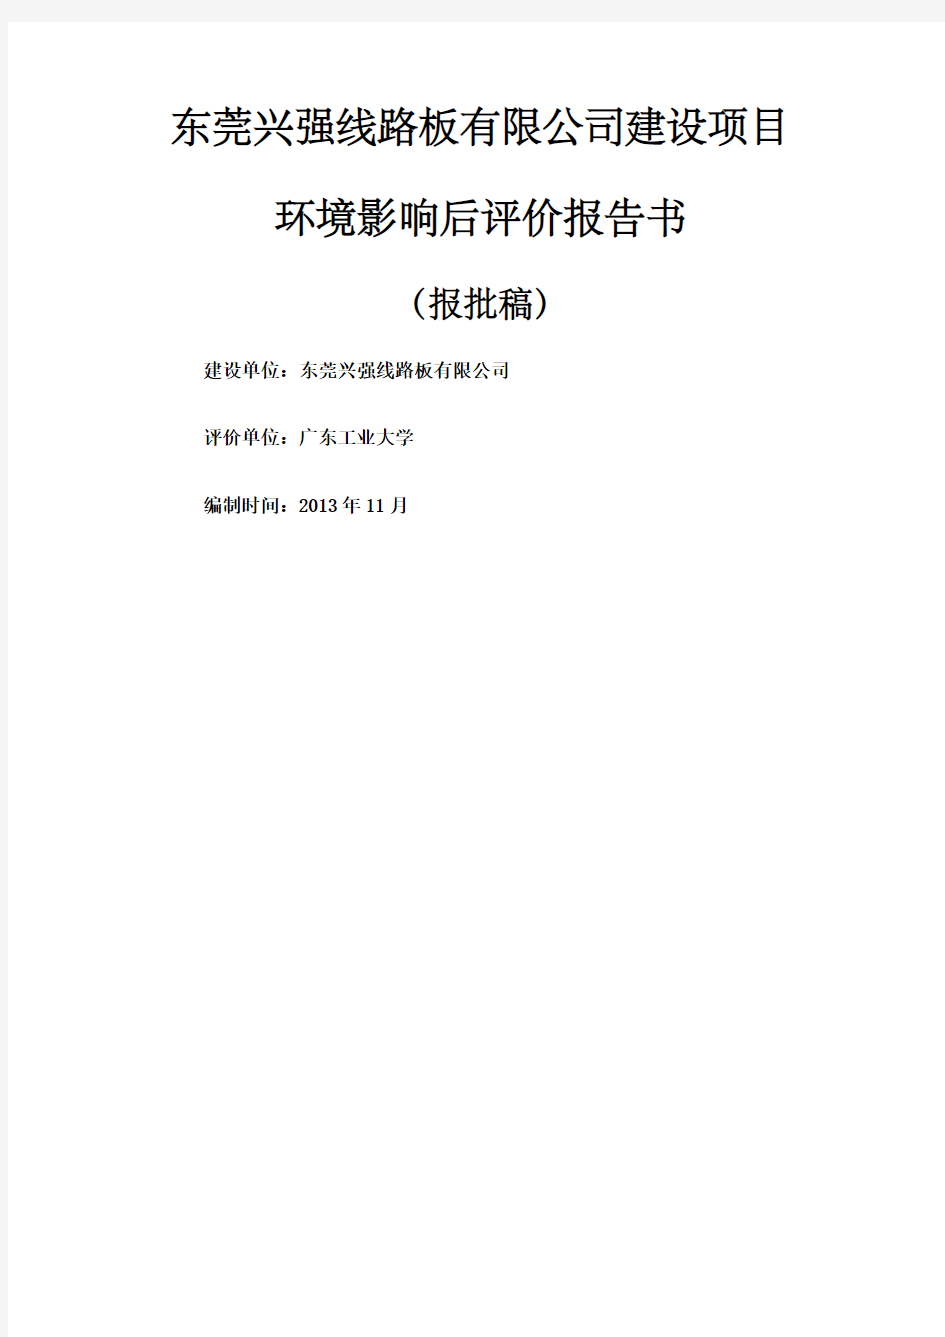 东莞兴强线路板公司建设项目环境影响评价报告书